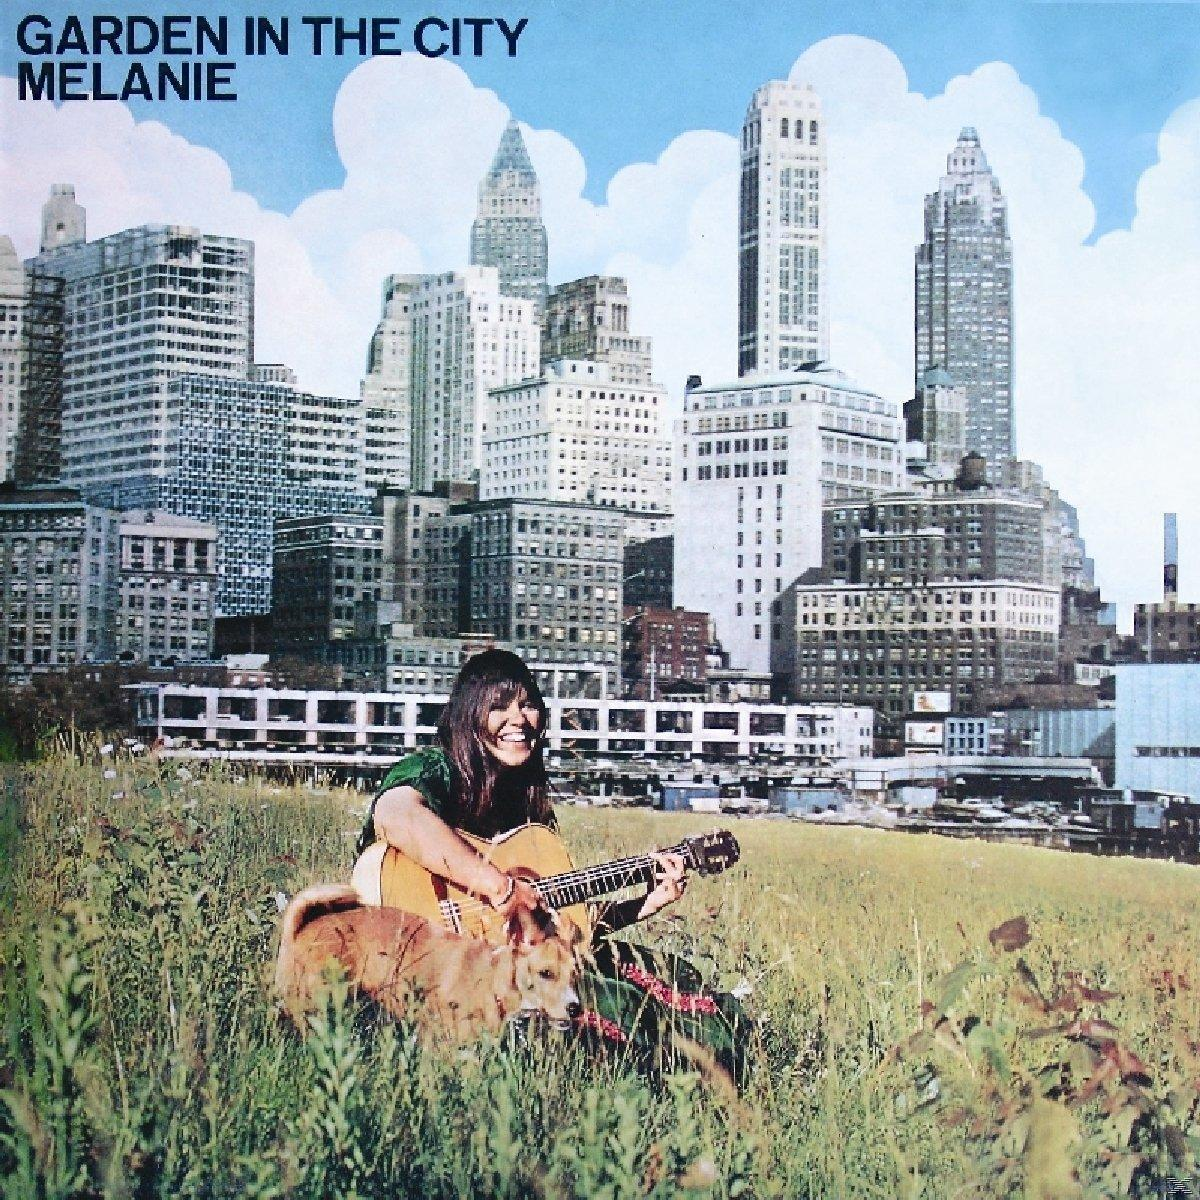 City Melanie - In Garden (CD) - The